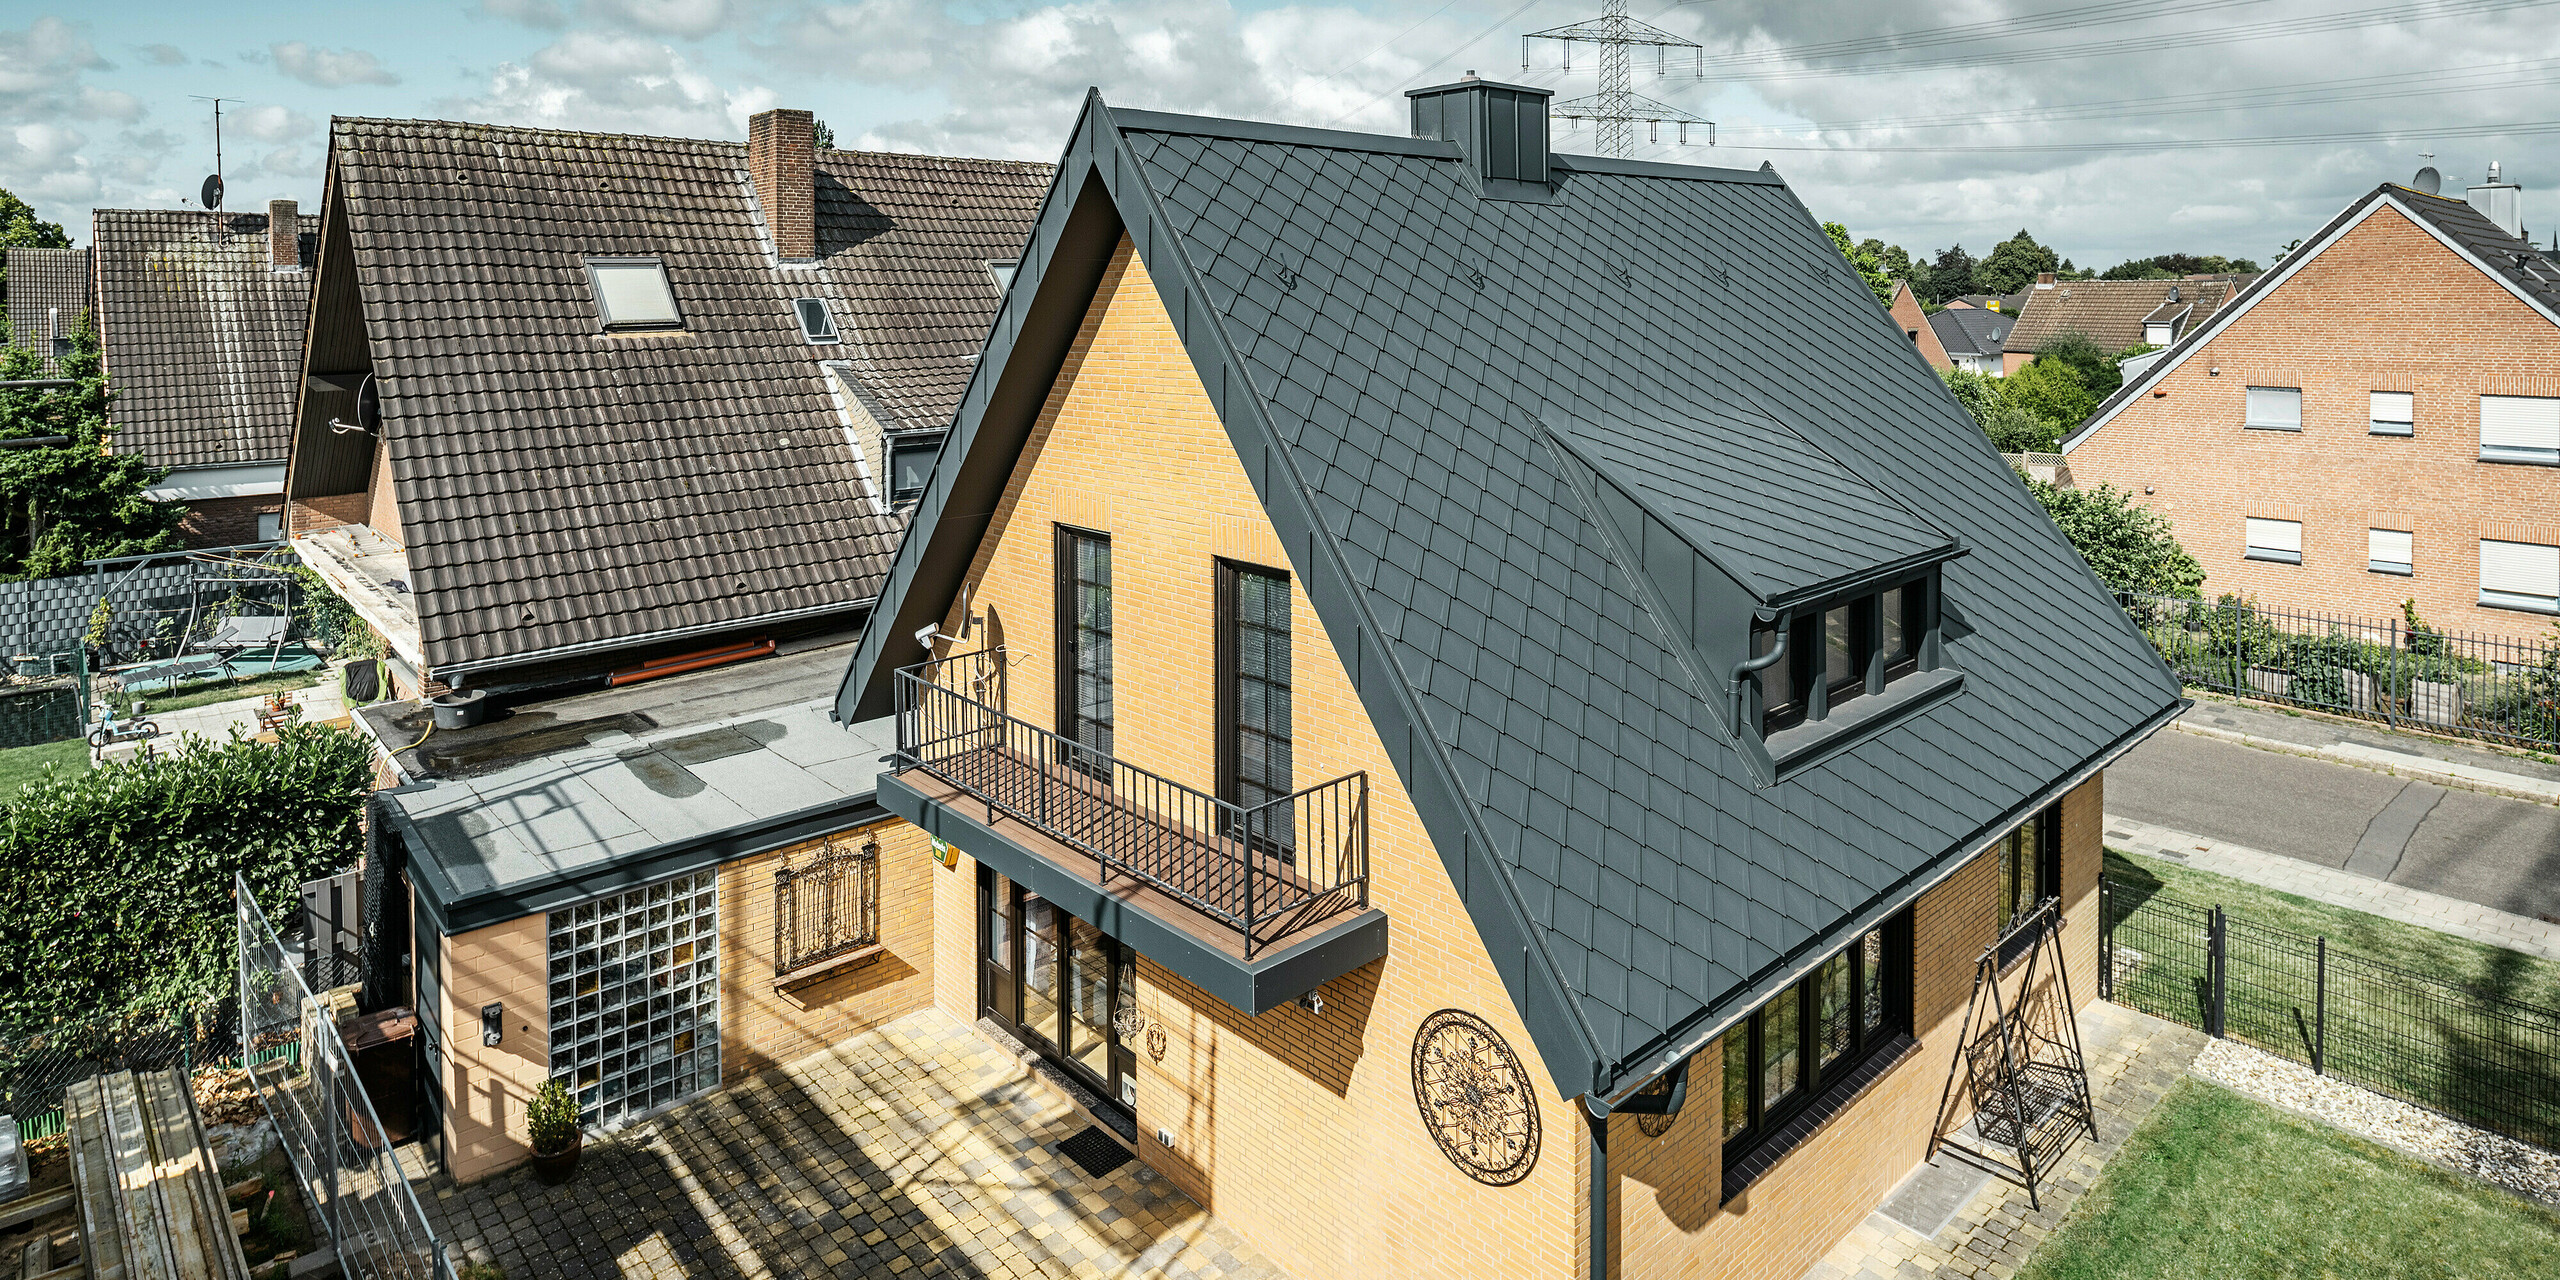 Einfamilienhaus in Tönisvorst mit einem spitzen Giebeldach, bedeckt mit PREFA Dachrauten 29×29 in P.10 Anthrazit. Das Dach weist eine klare Linienführung und Struktur auf. Die Dachrinne und das Ablaufrohr sind farblich abgestimmt und fügen sich nahtlos in das Design ein. Das Haus zeichnet sich durch gelbe Backsteinwände aus, die mit den dunklen Dachelementen kontrastieren, während ein Balkon und ein kleines Nebengebäude das äußere Erscheinungsbild vervollständigen.